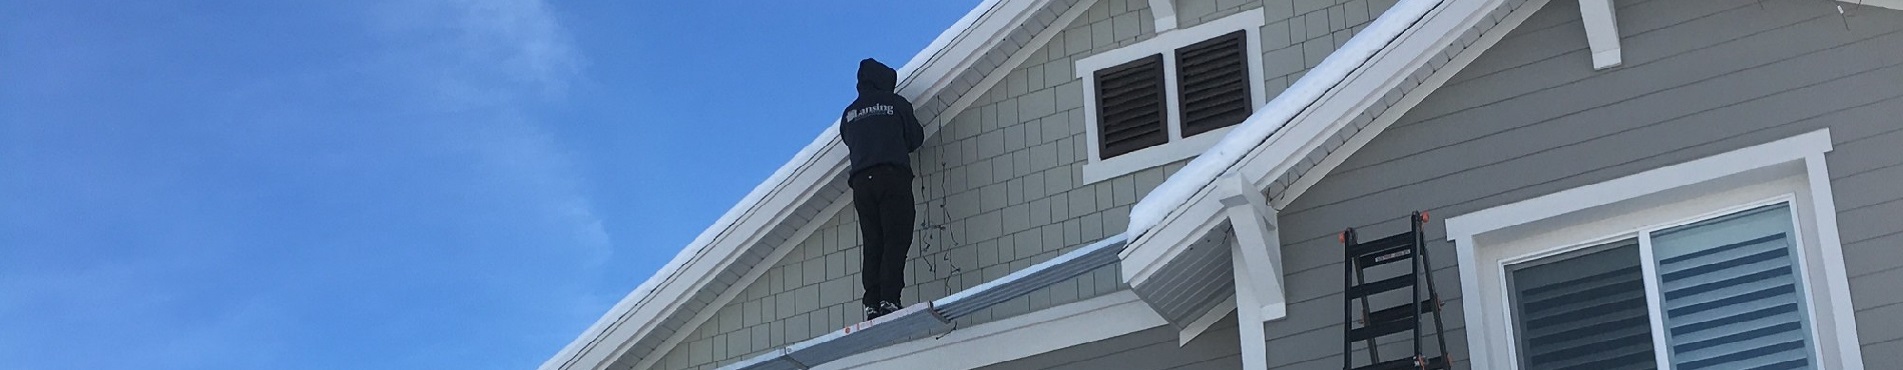 gutter installation repair Utah